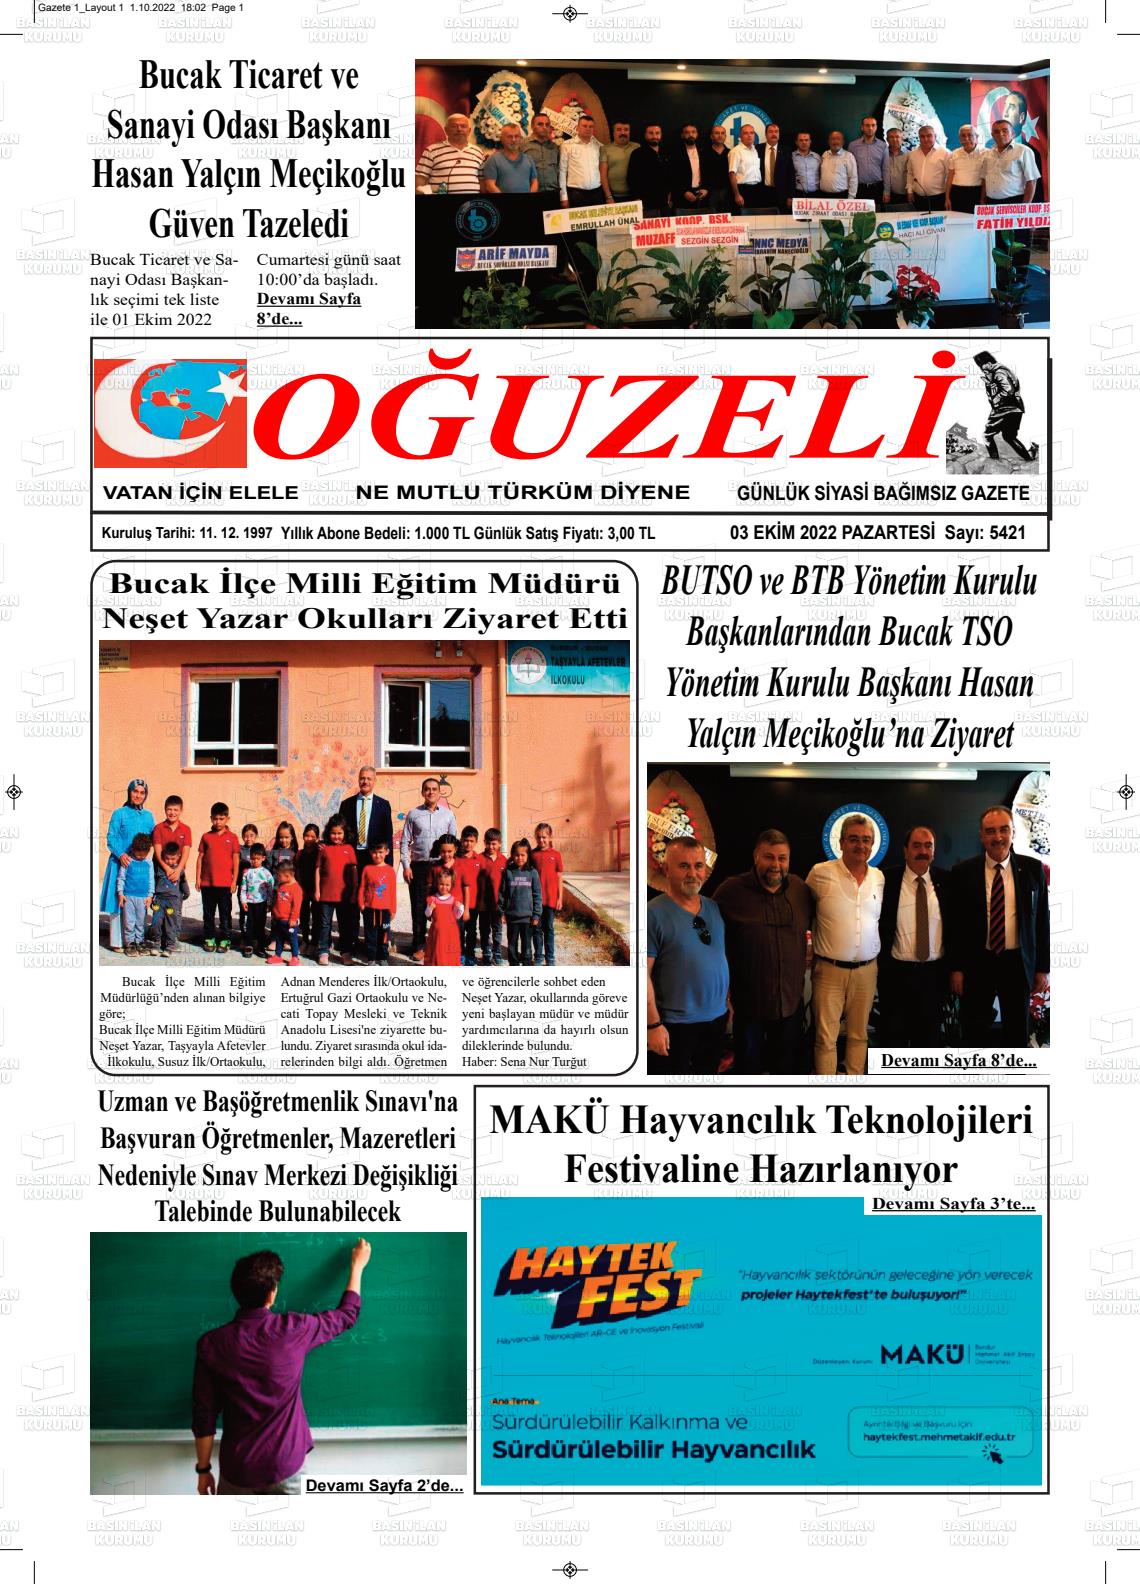 03 Ekim 2022 Oğuzeli Gazete Manşeti